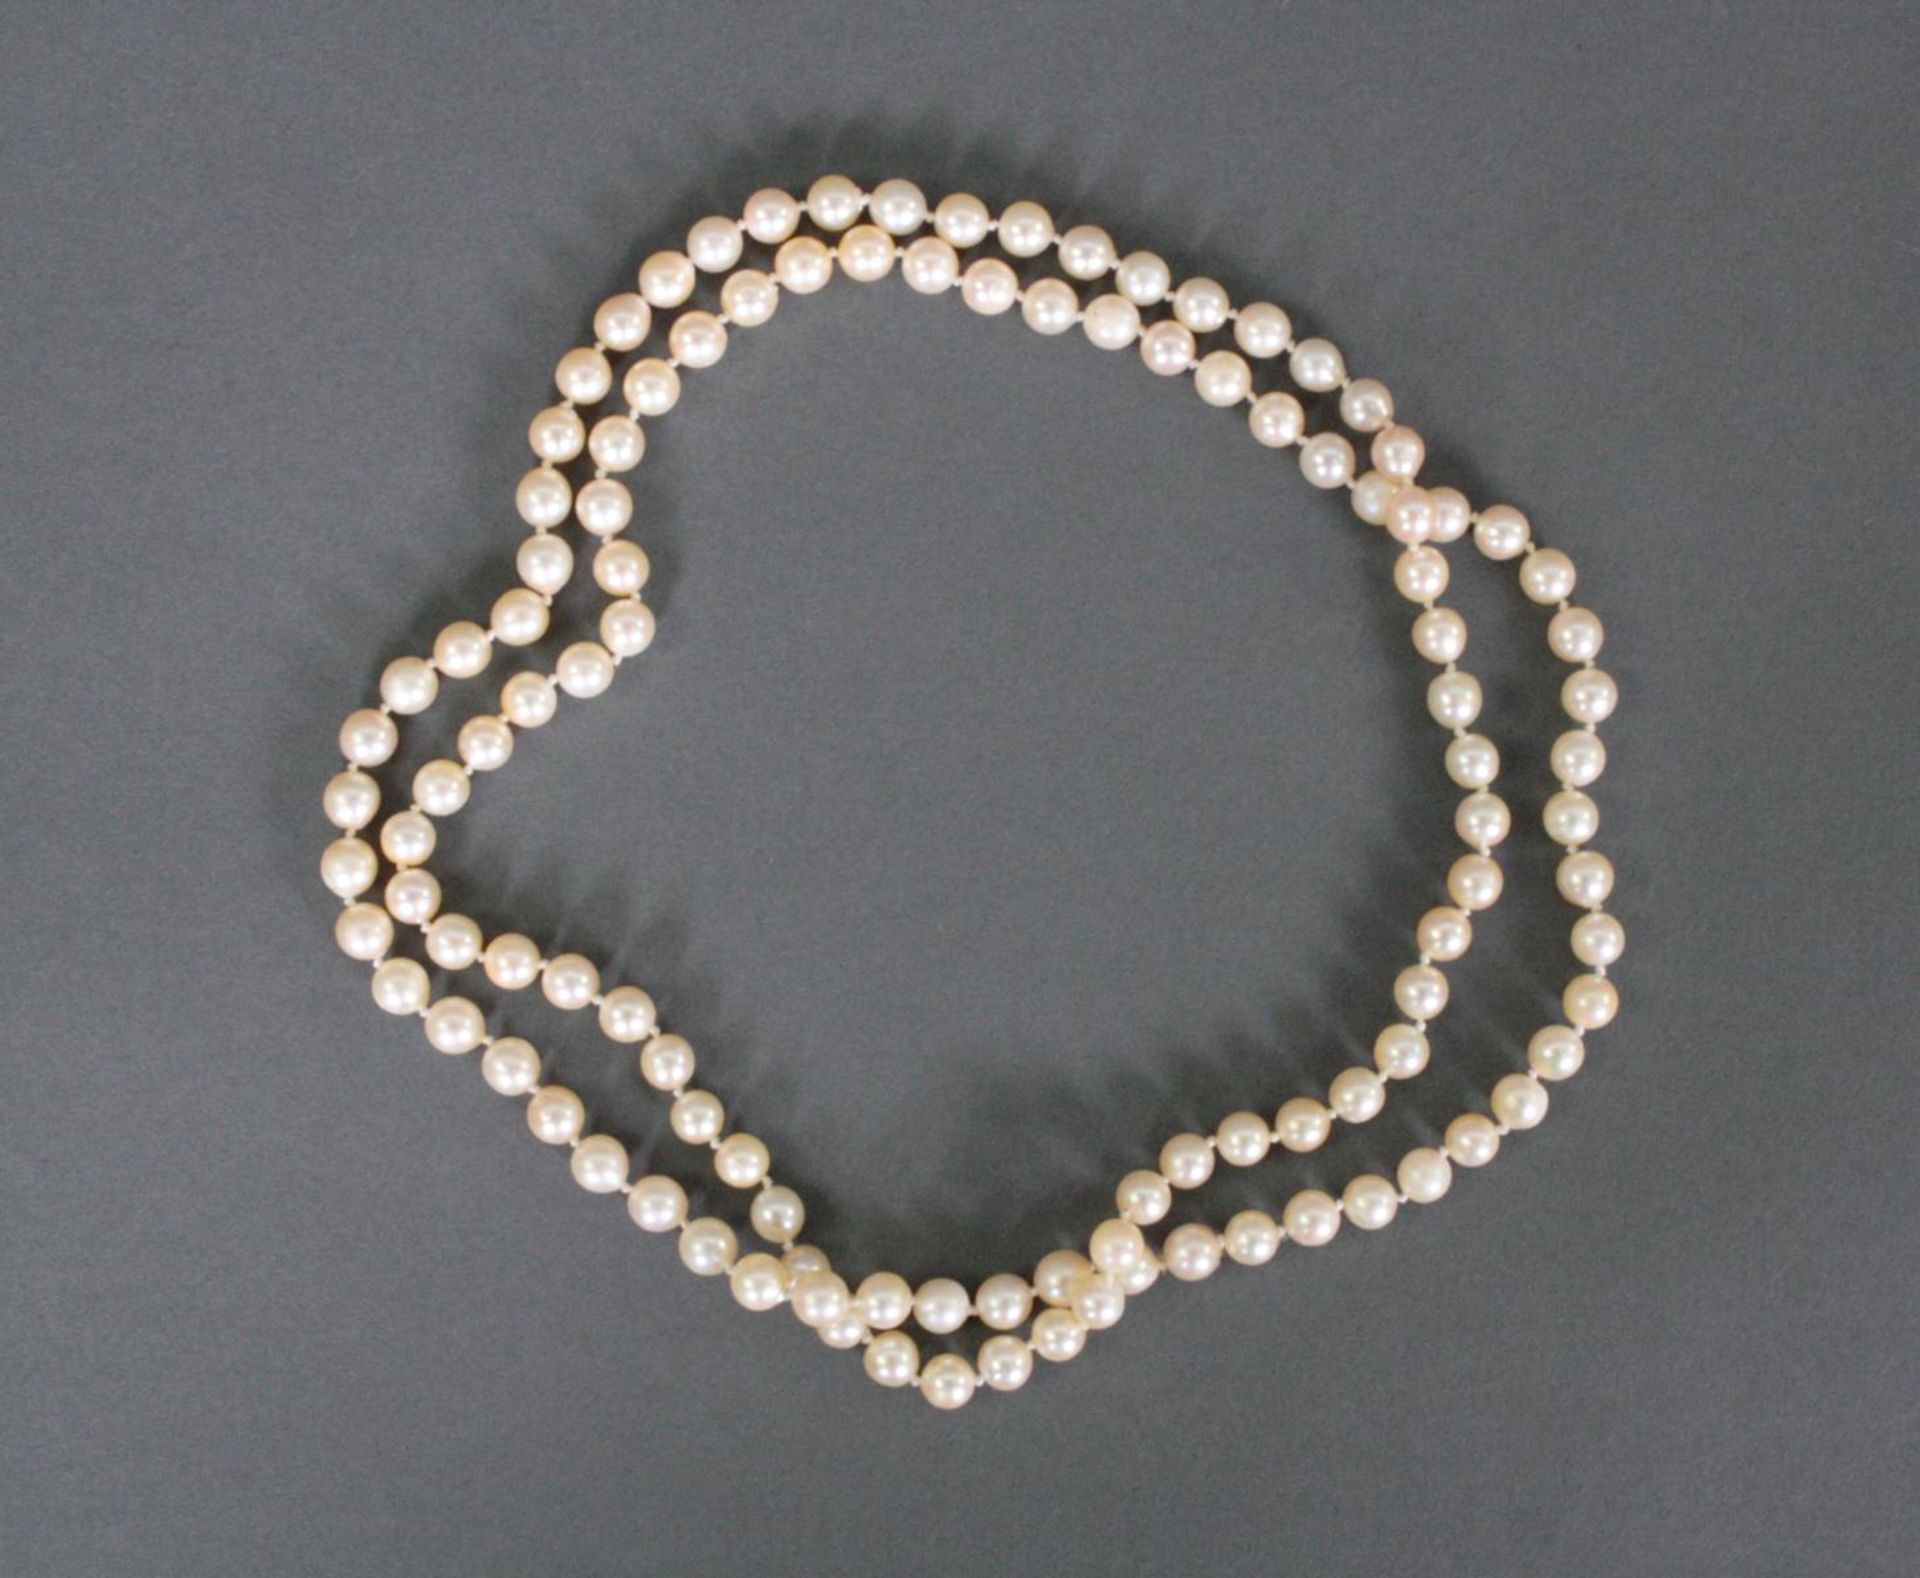 PerlenketteWeit über 100 Perlen (Durchmesser 6-7 mm), einzeln geknotet aufgefädelt, ca. Länge 44